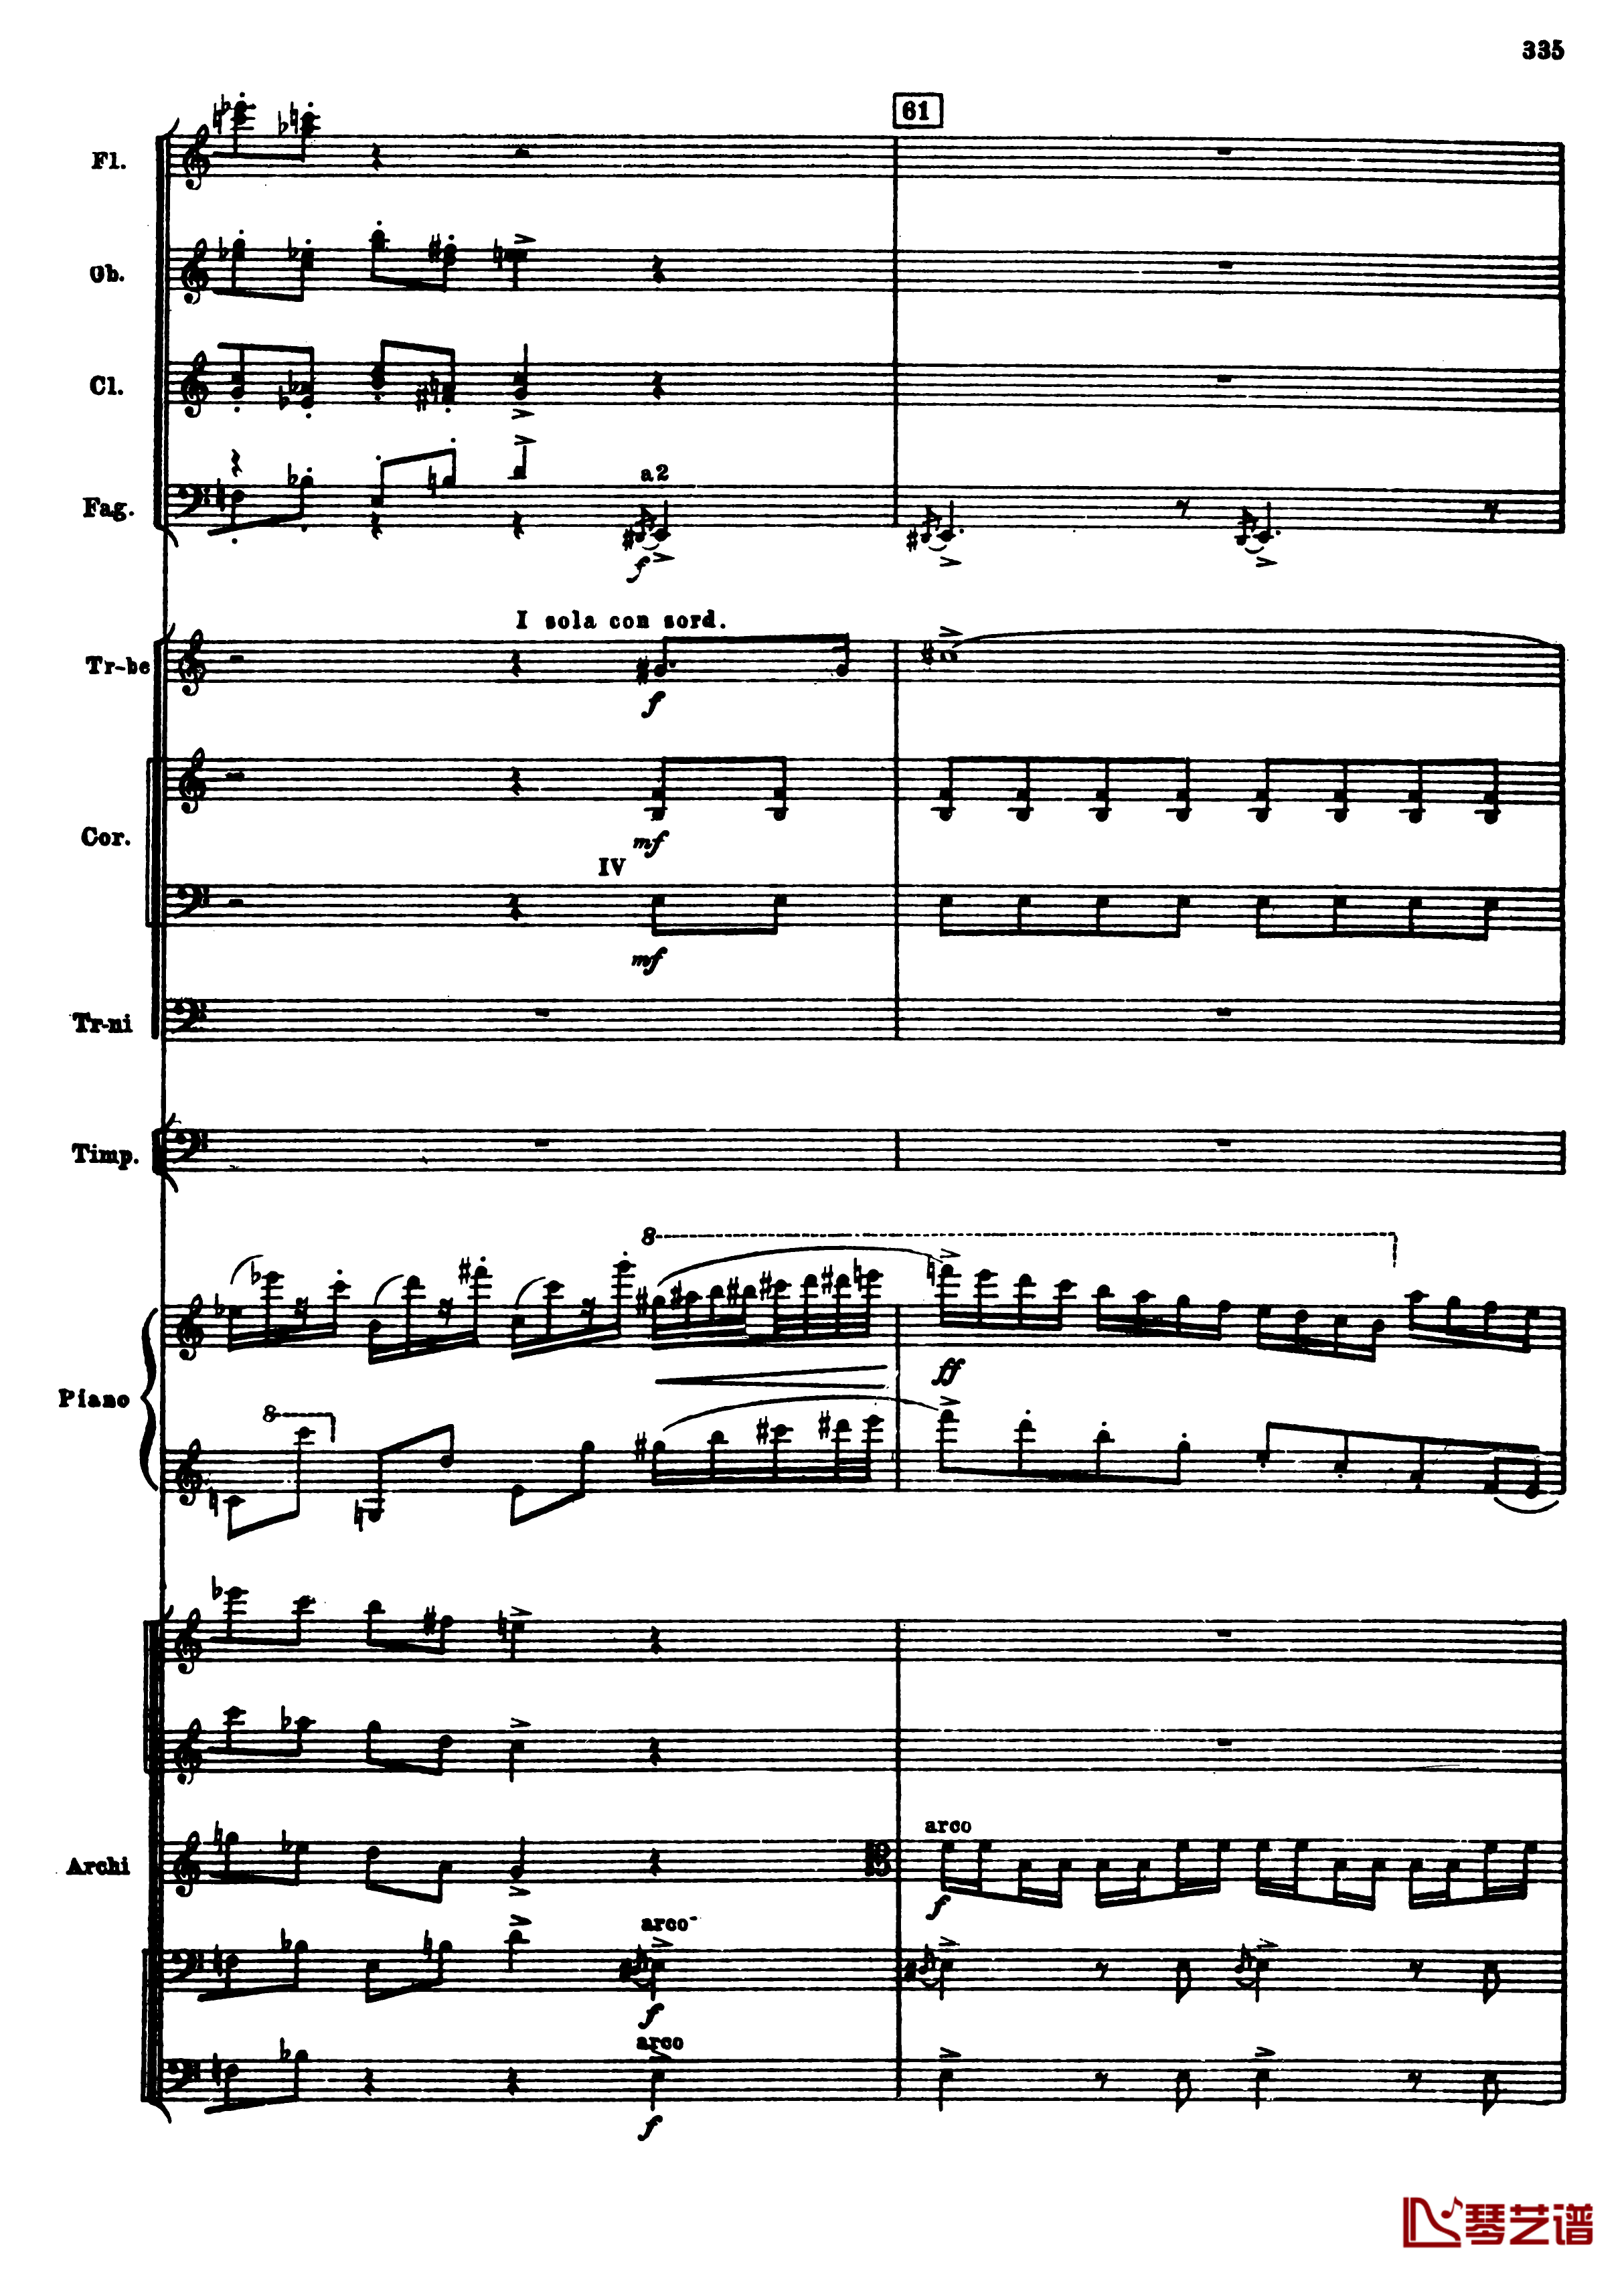 普罗科菲耶夫第三钢琴协奏曲钢琴谱-总谱-普罗科非耶夫67